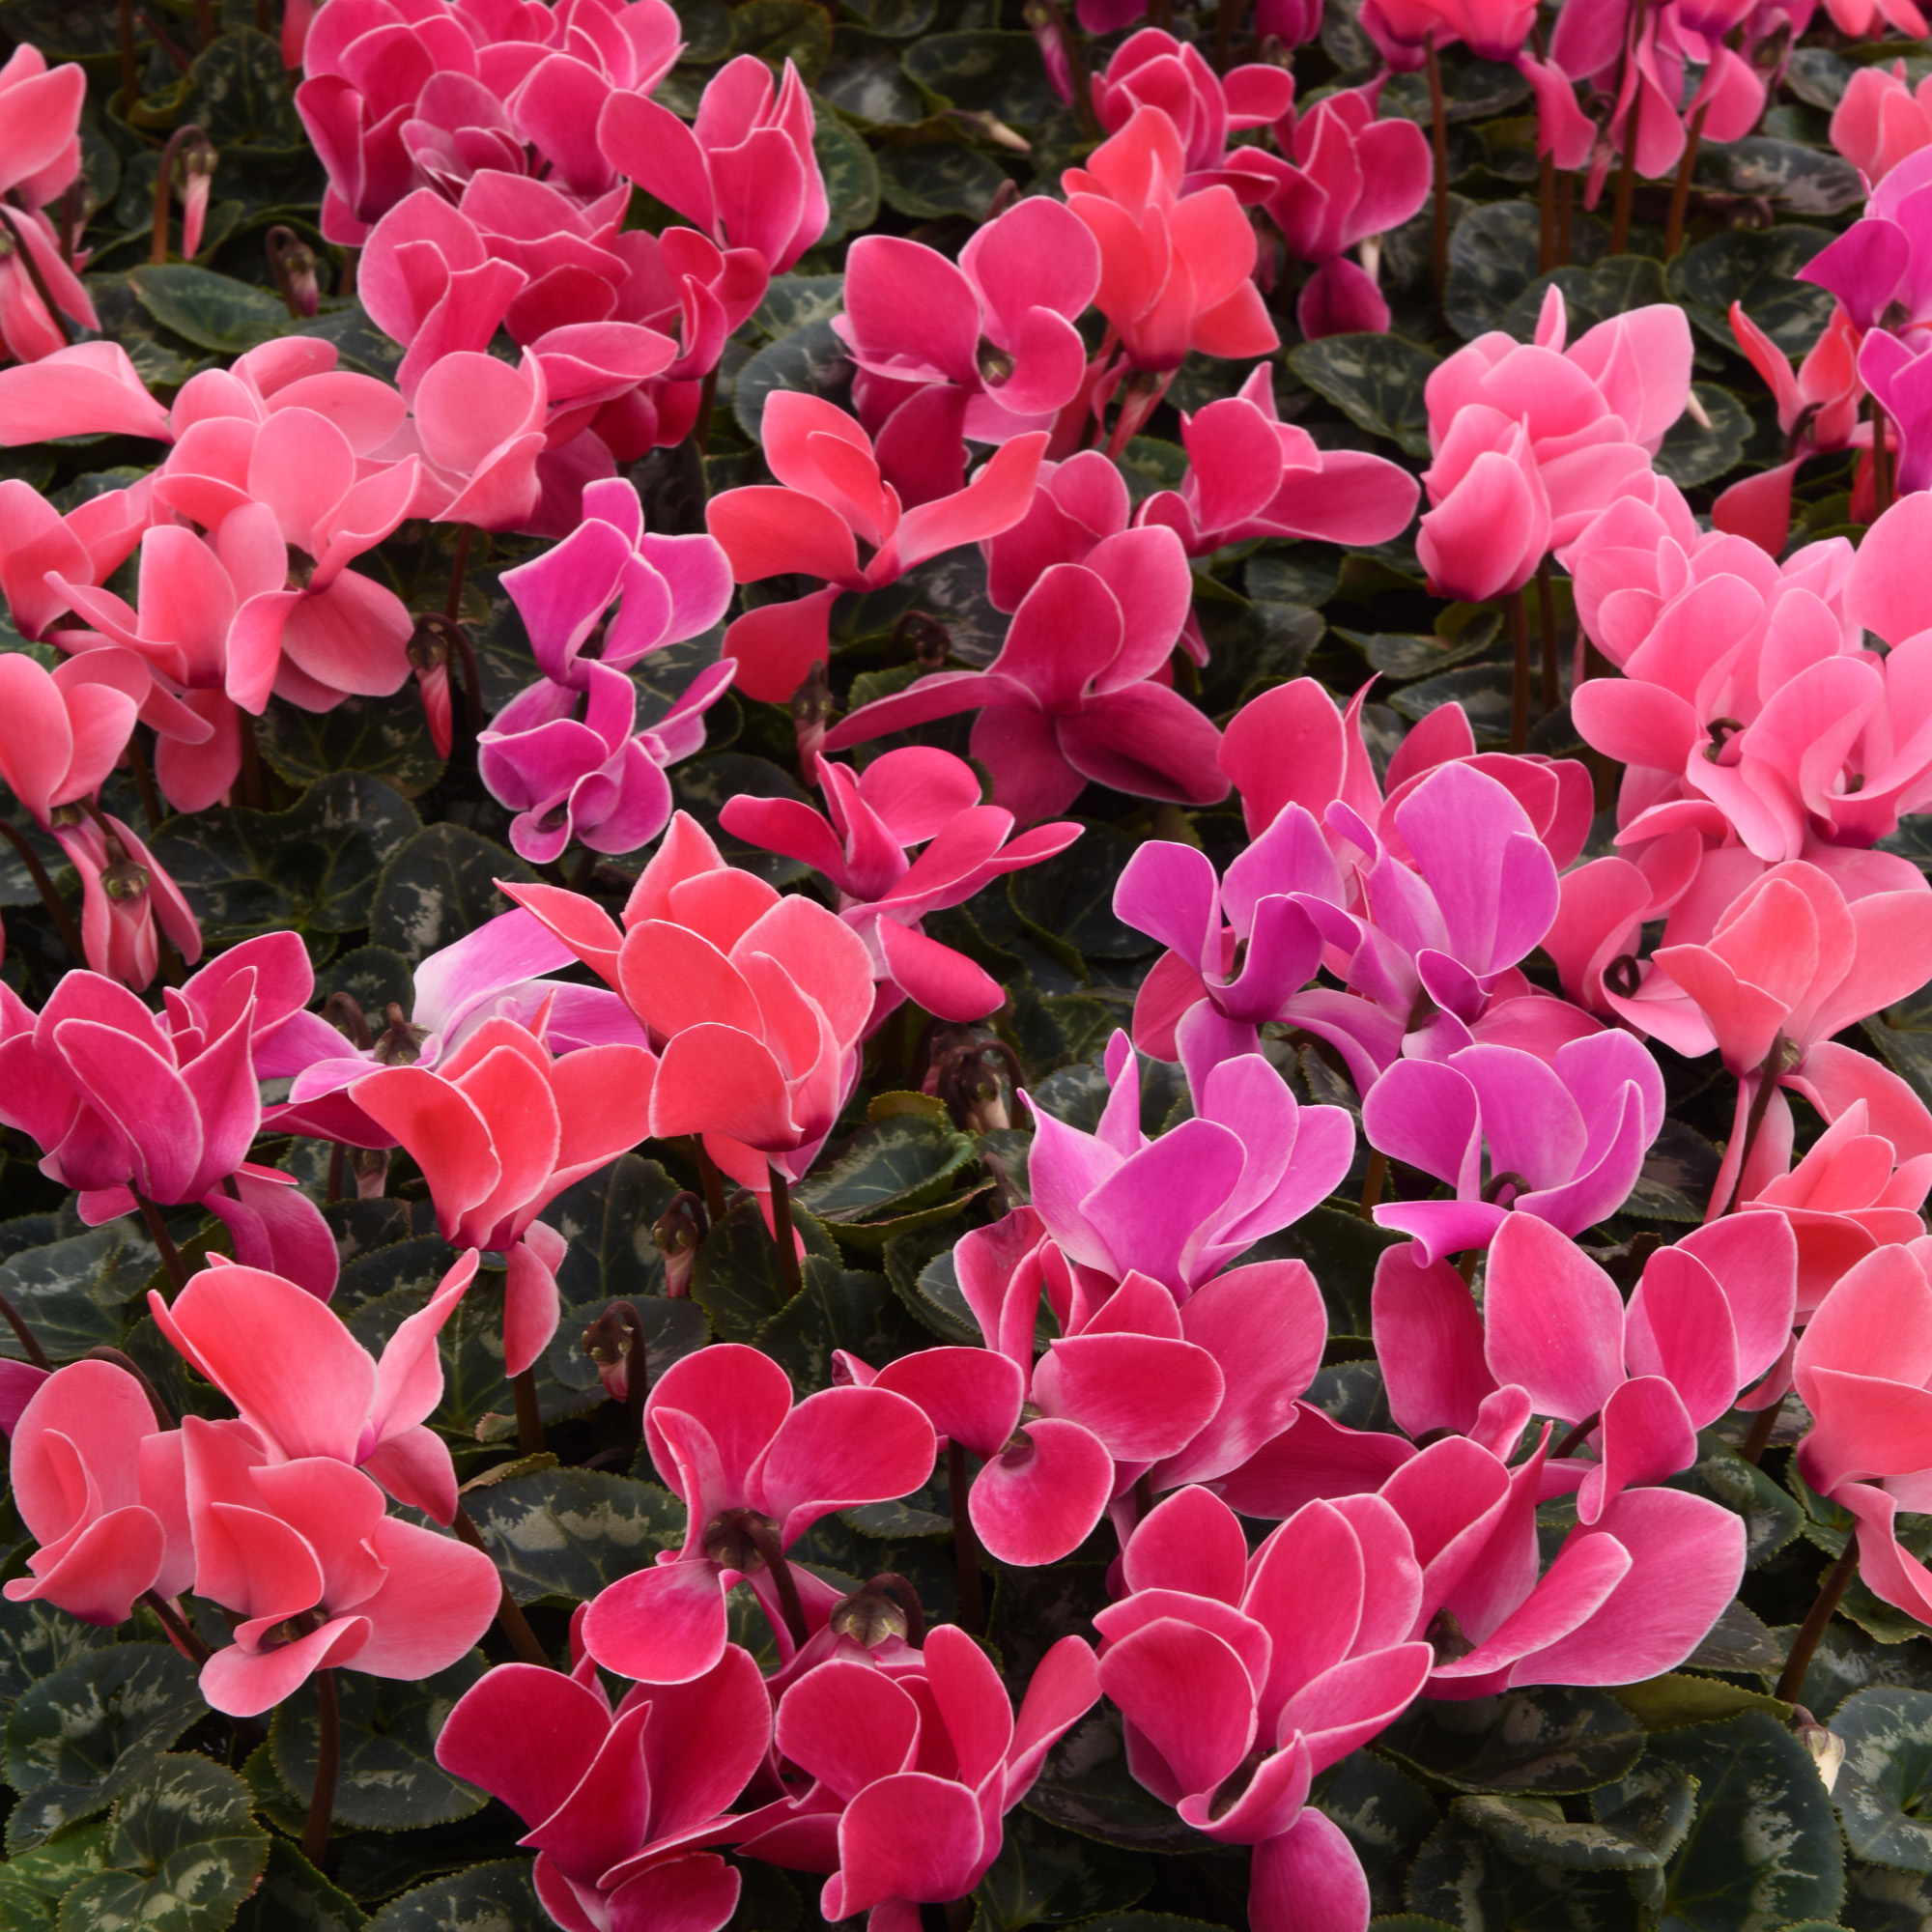 Cyclamen Flowers